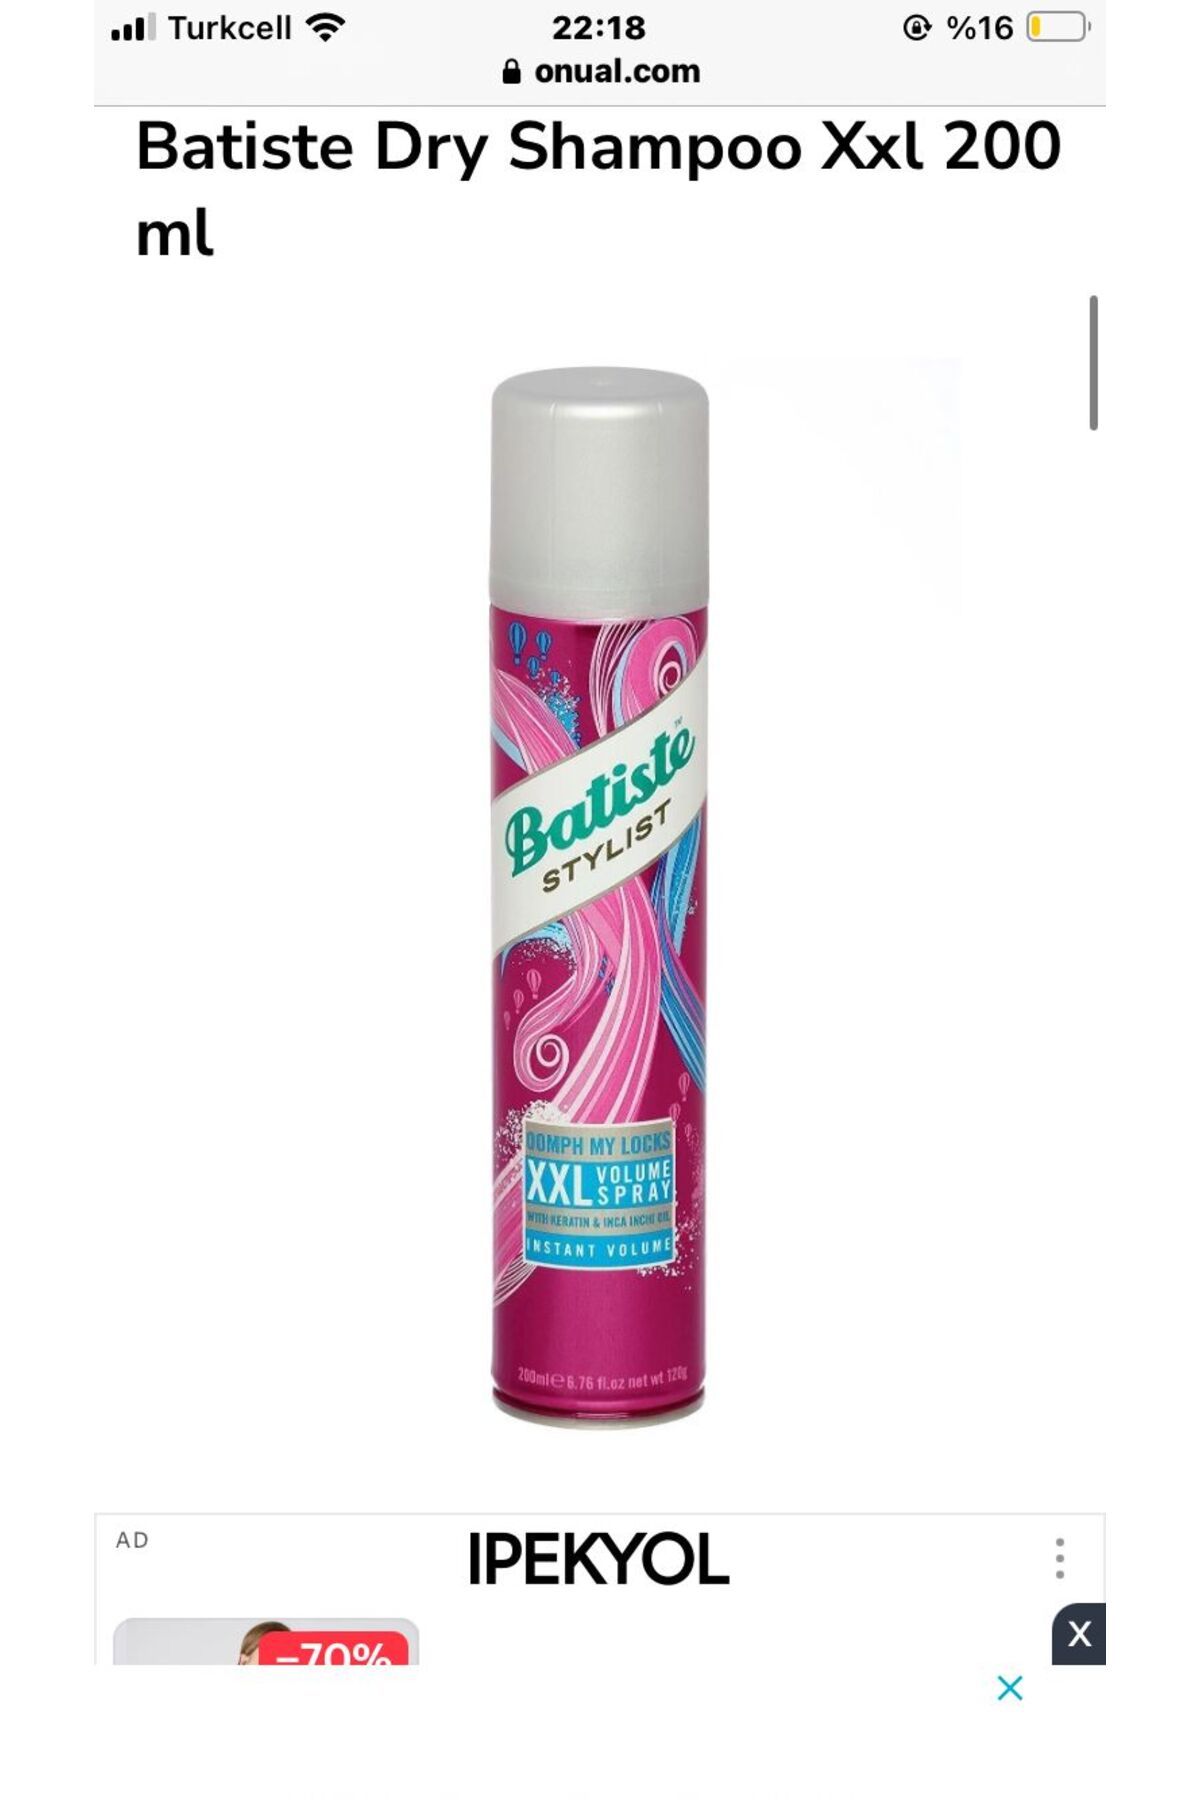 NIVEA Batiste Dry Shampoo Xxl 200 ml